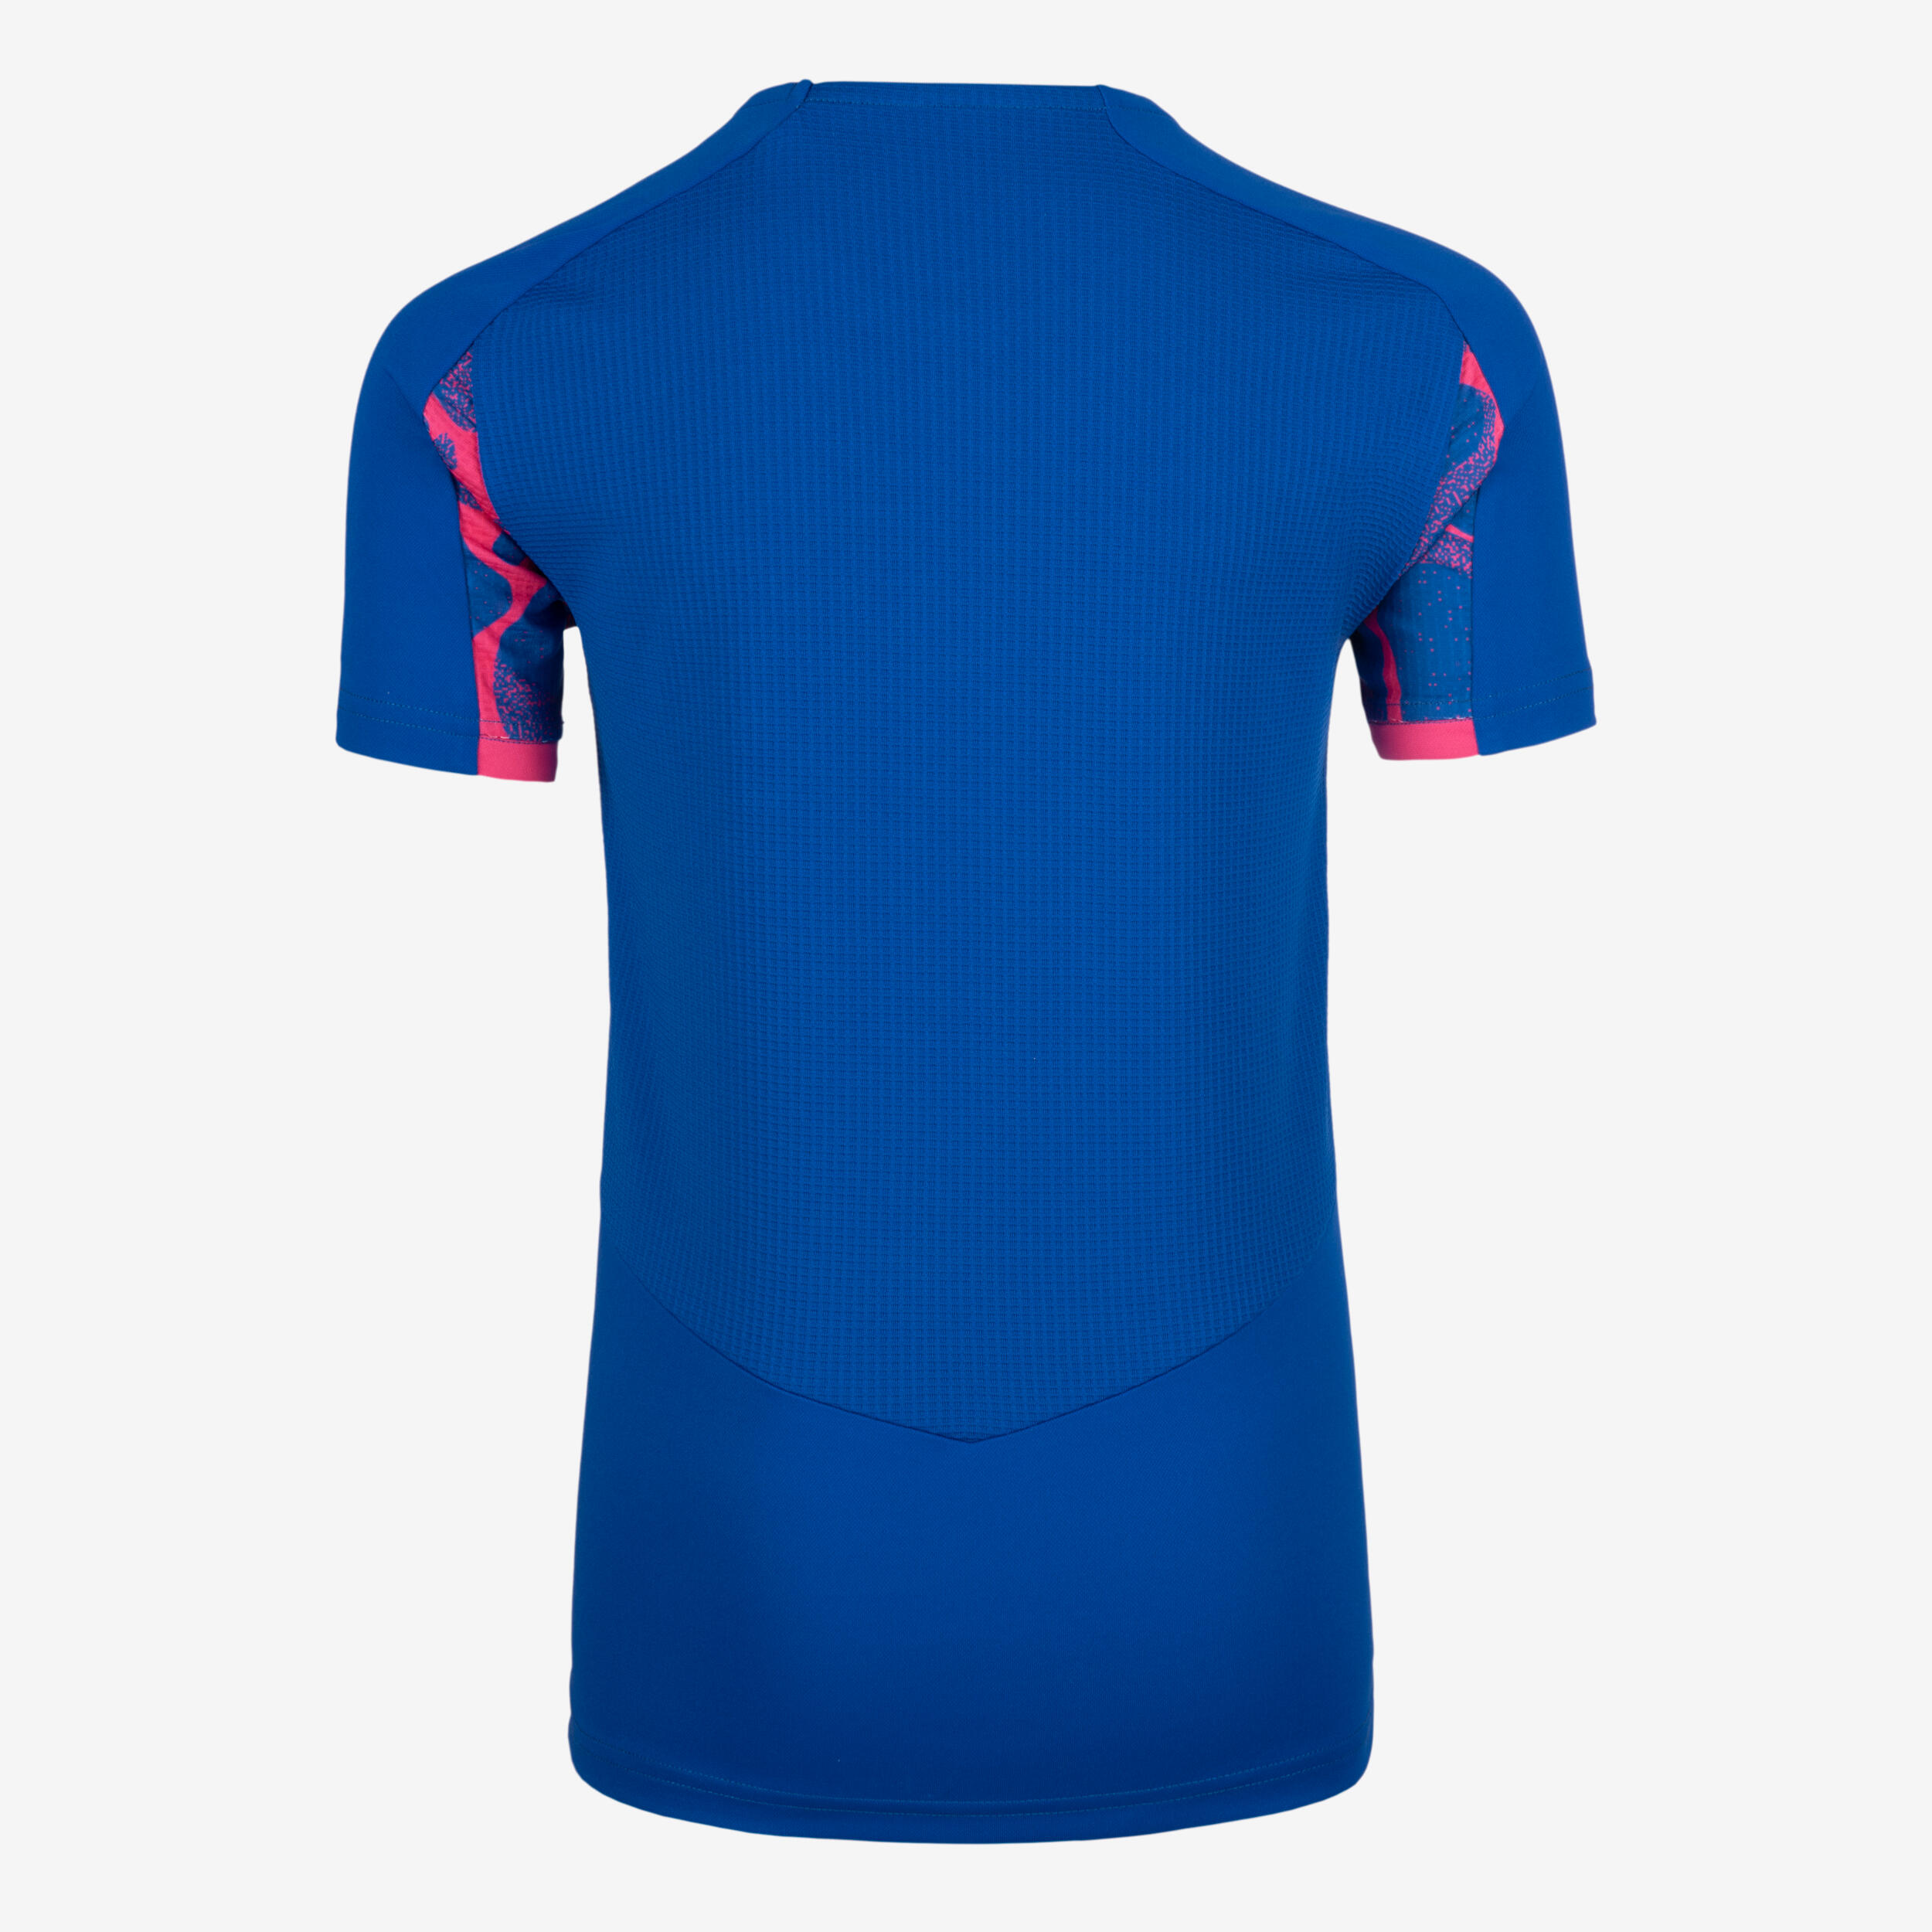 Kids' Football Short-Sleeved Shirt Viralto - Aqua Blue/Pink 6/6